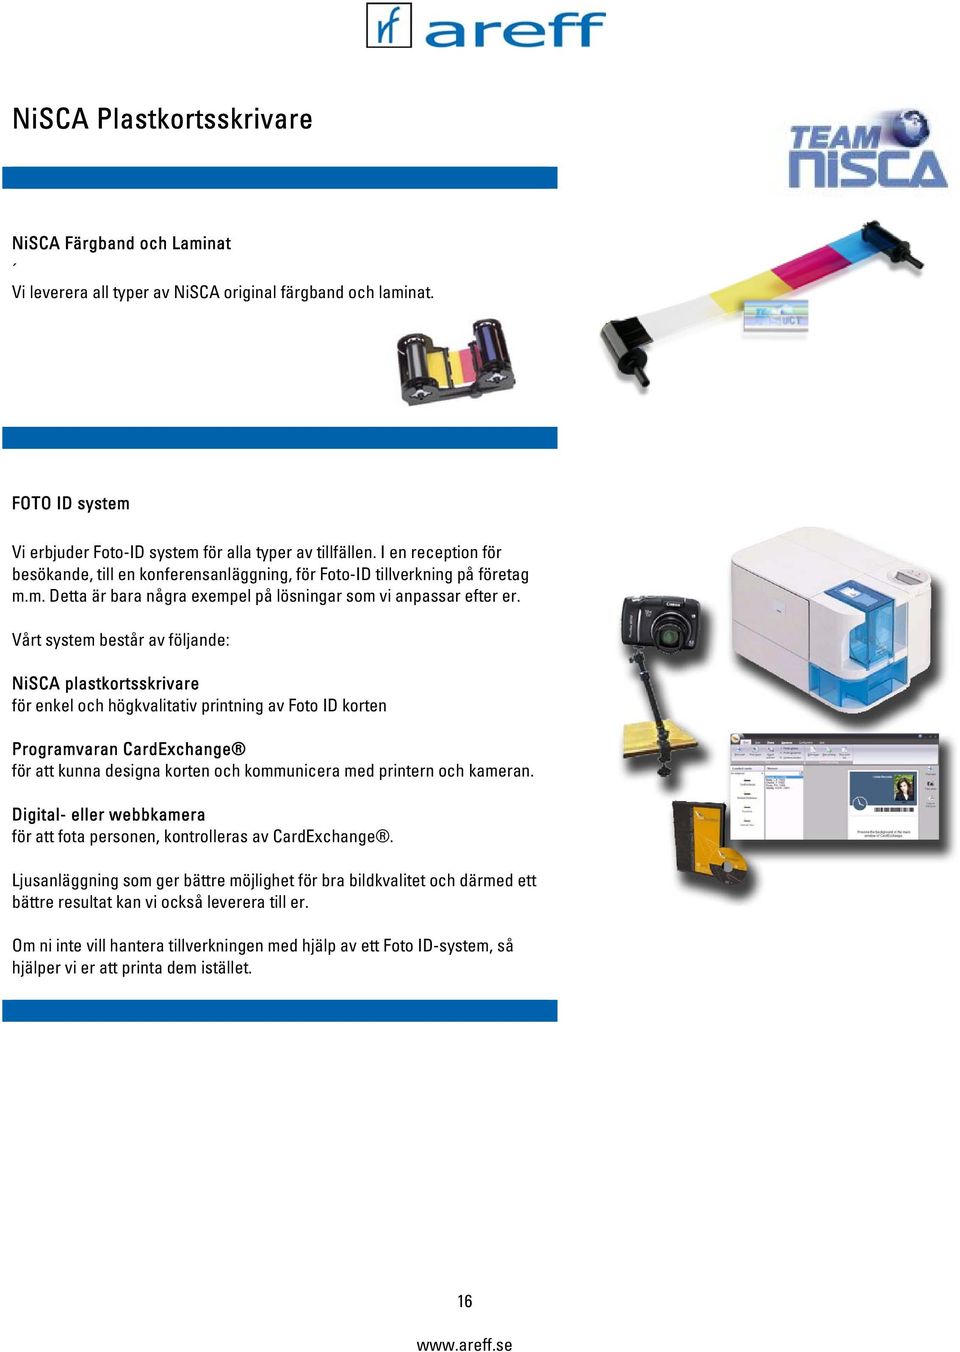 Vårt system består av följande: NiSCA plastkortsskrivare för enkel och högkvalitativ printning av Foto ID korten Programvaran CardExchange för att kunna designa korten och kommunicera med printern